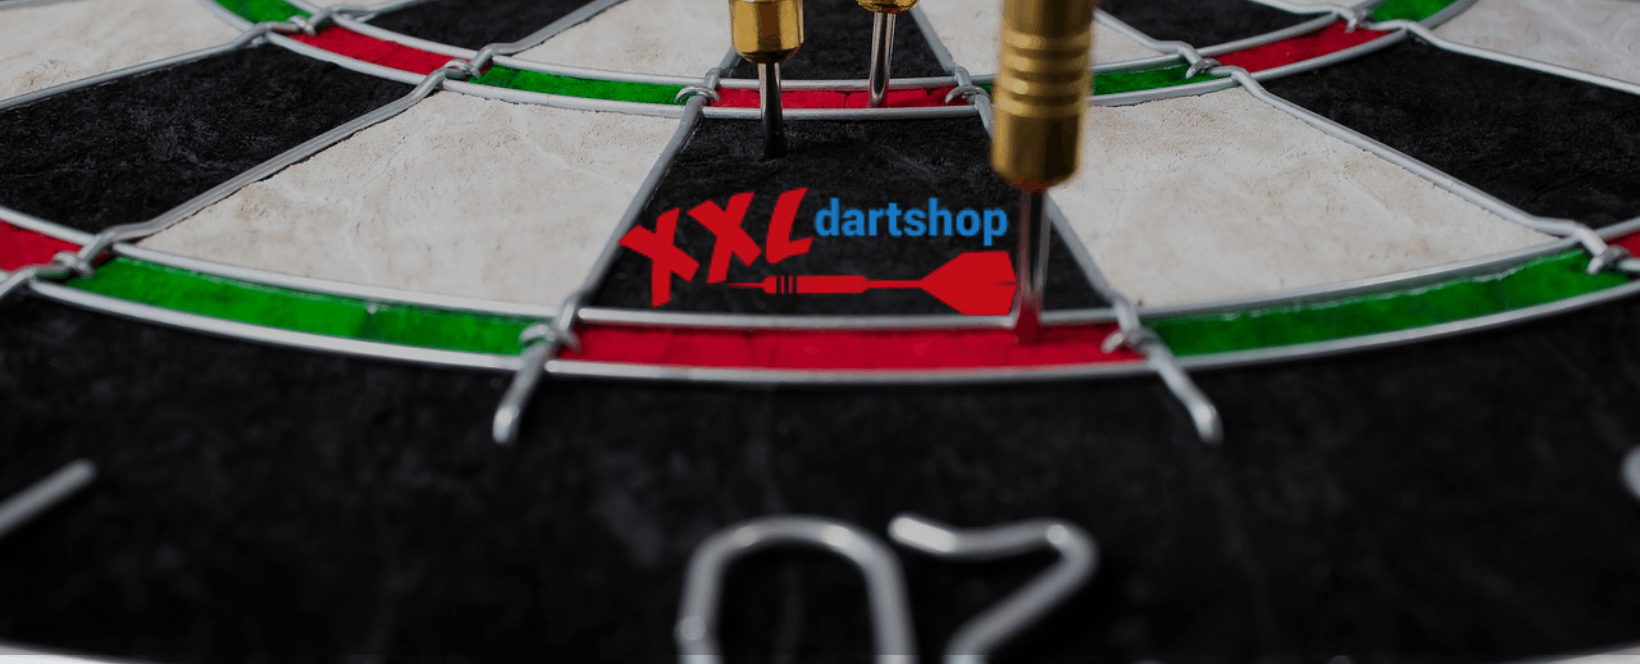 darts surround